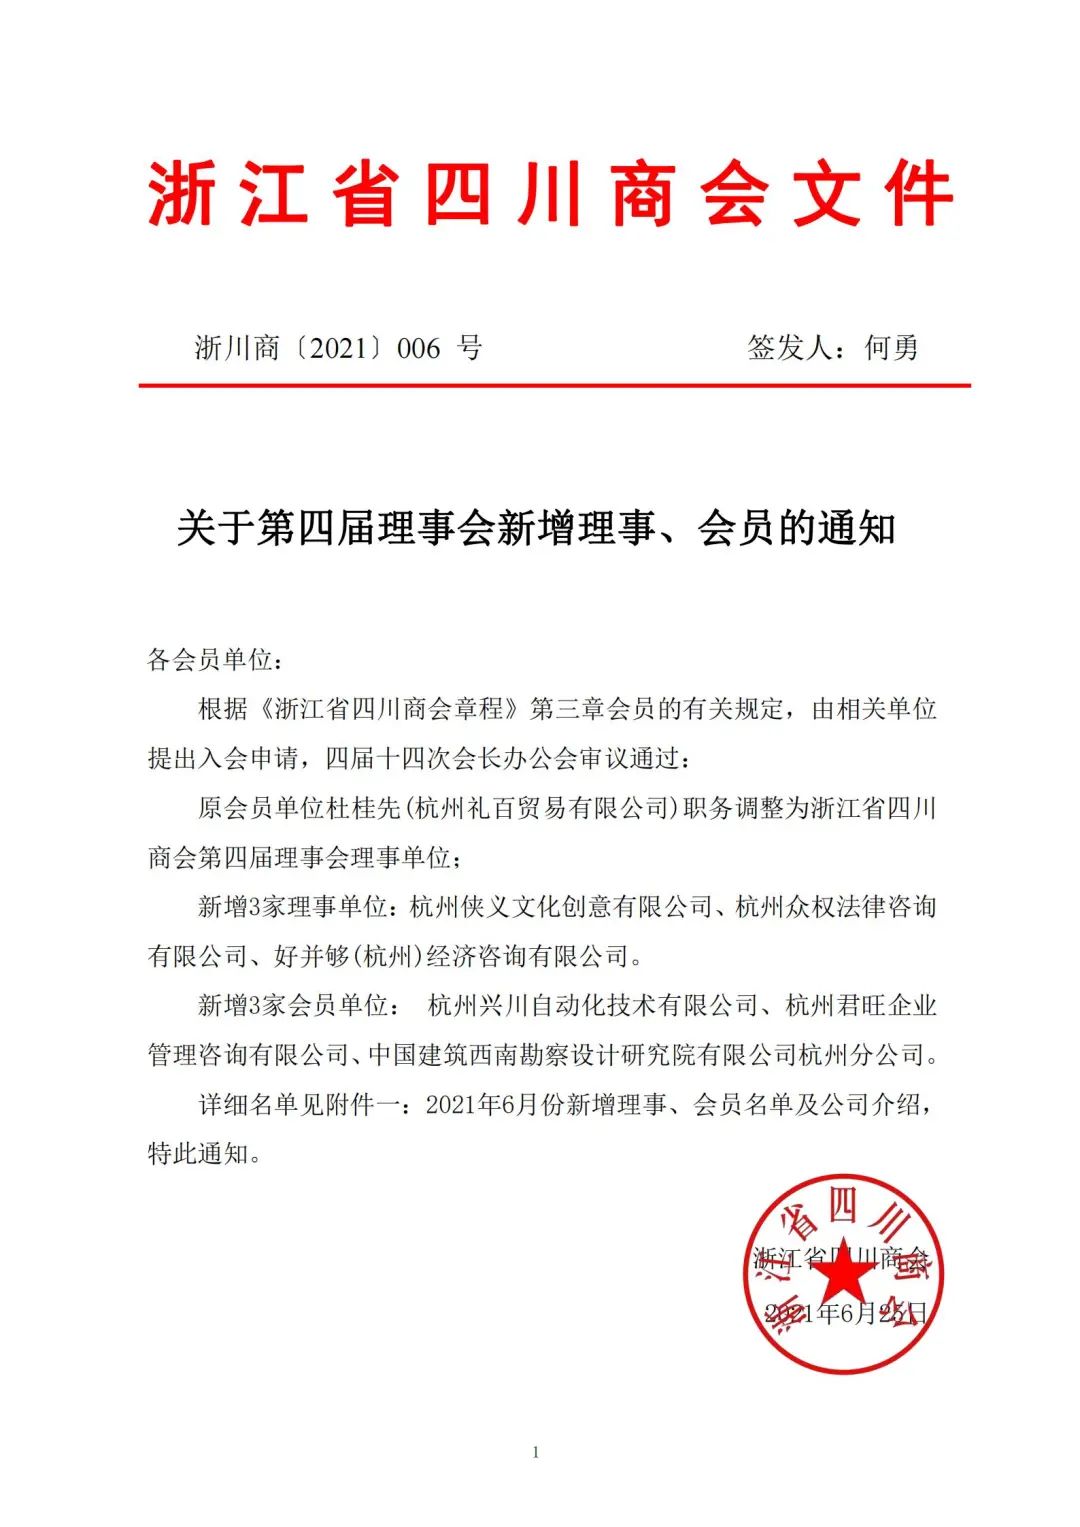 【公告】浙江省四川商会2021年6月新晋会员风采展示